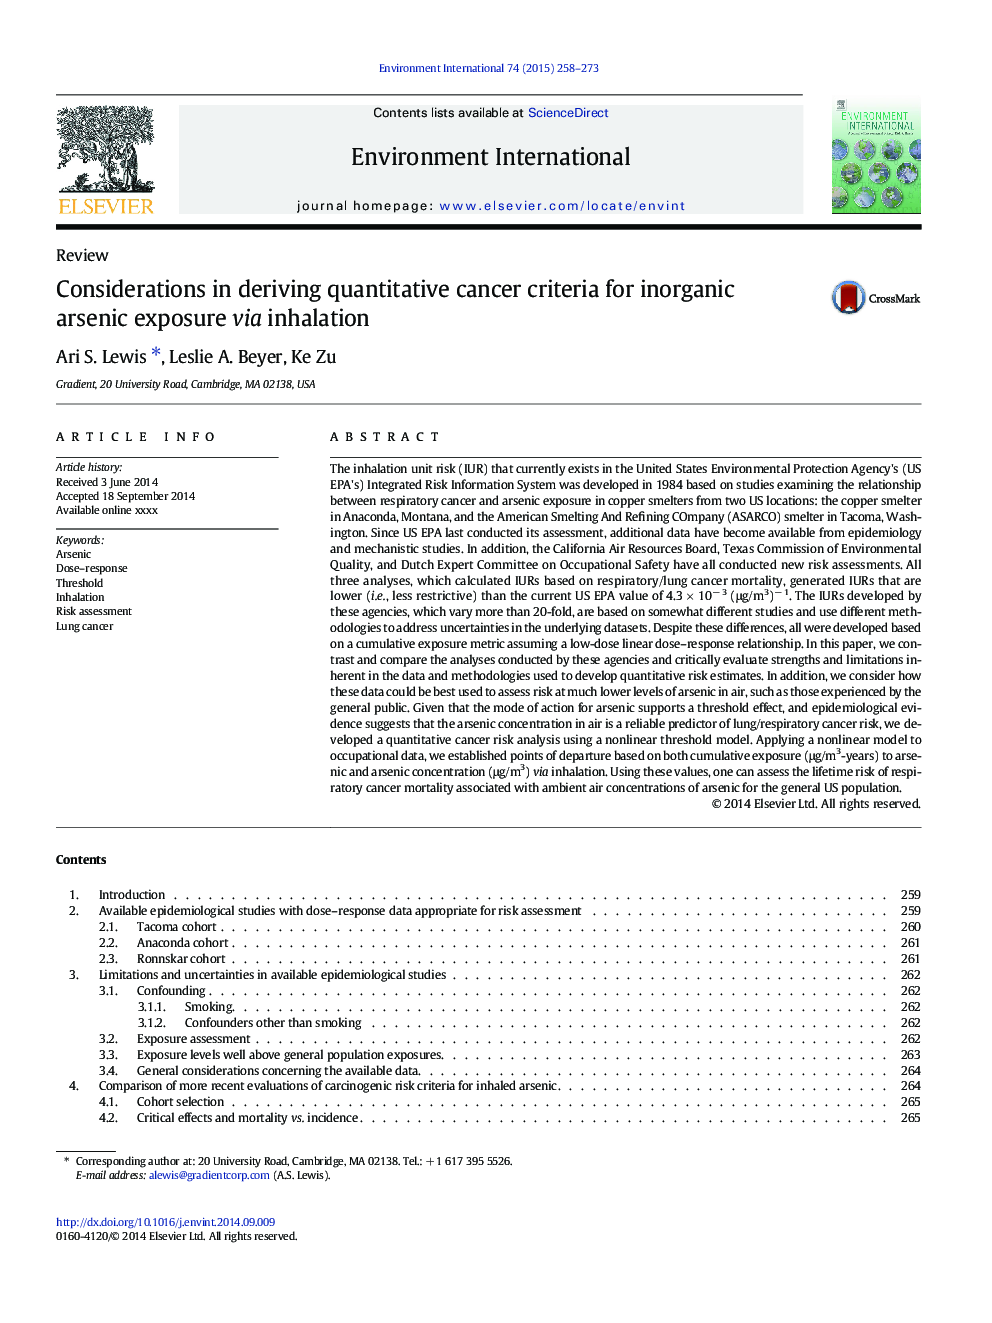 Considerations in deriving quantitative cancer criteria for inorganic arsenic exposure via inhalation